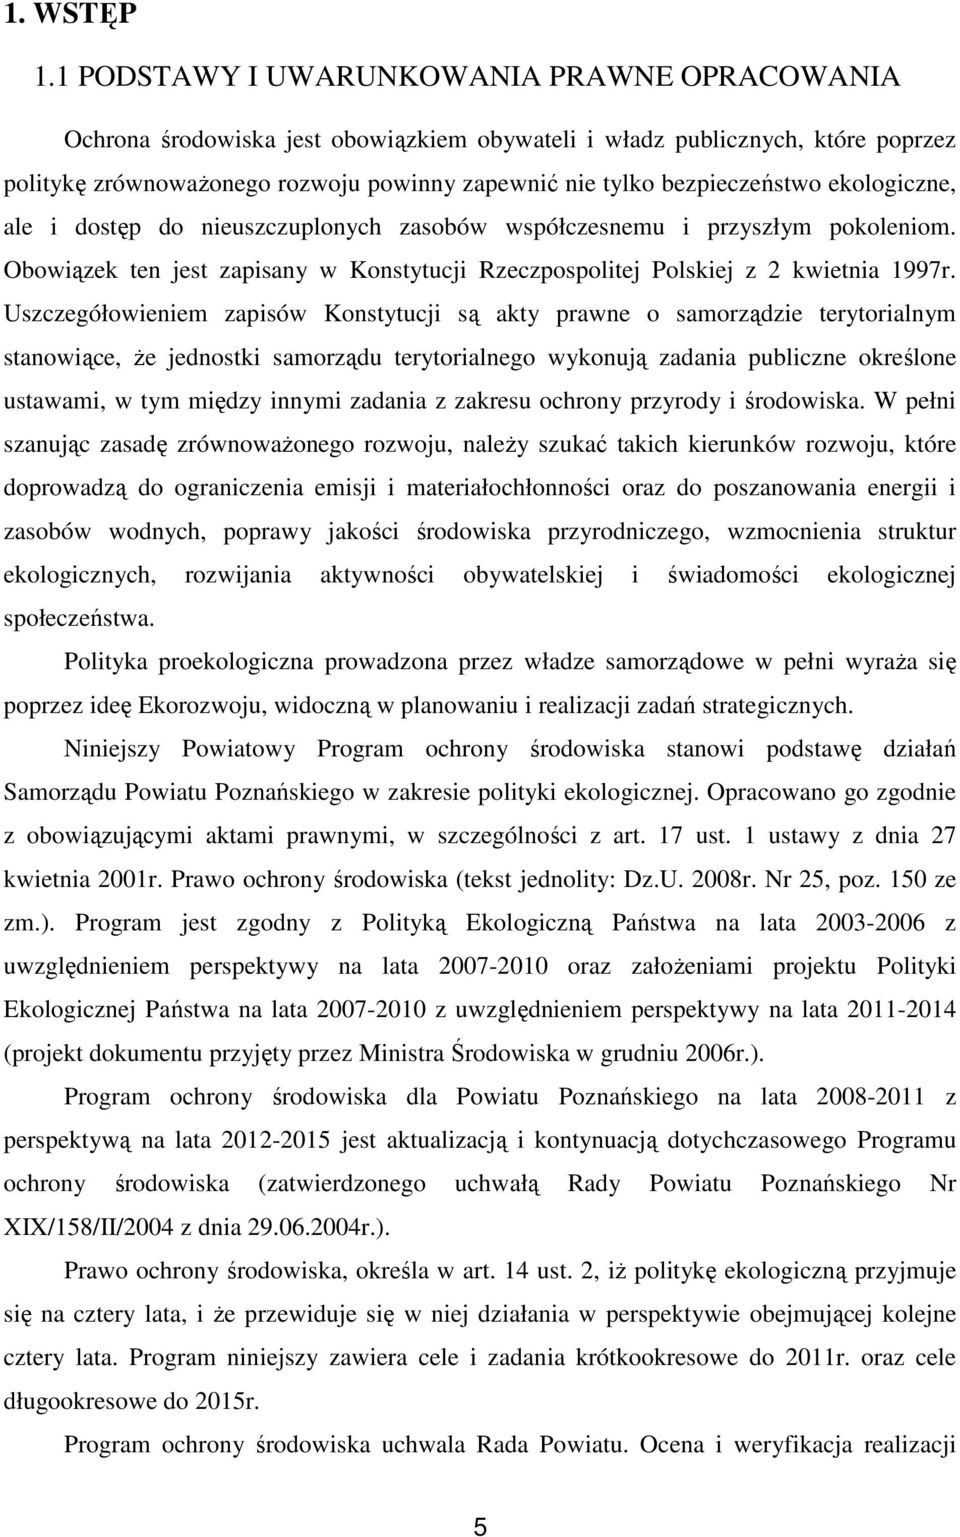 bezpieczeństwo ekologiczne, ale i dostęp do nieuszczuplonych zasobów współczesnemu i przyszłym pokoleniom. Obowiązek ten jest zapisany w Konstytucji Rzeczpospolitej Polskiej z 2 kwietnia 1997r.